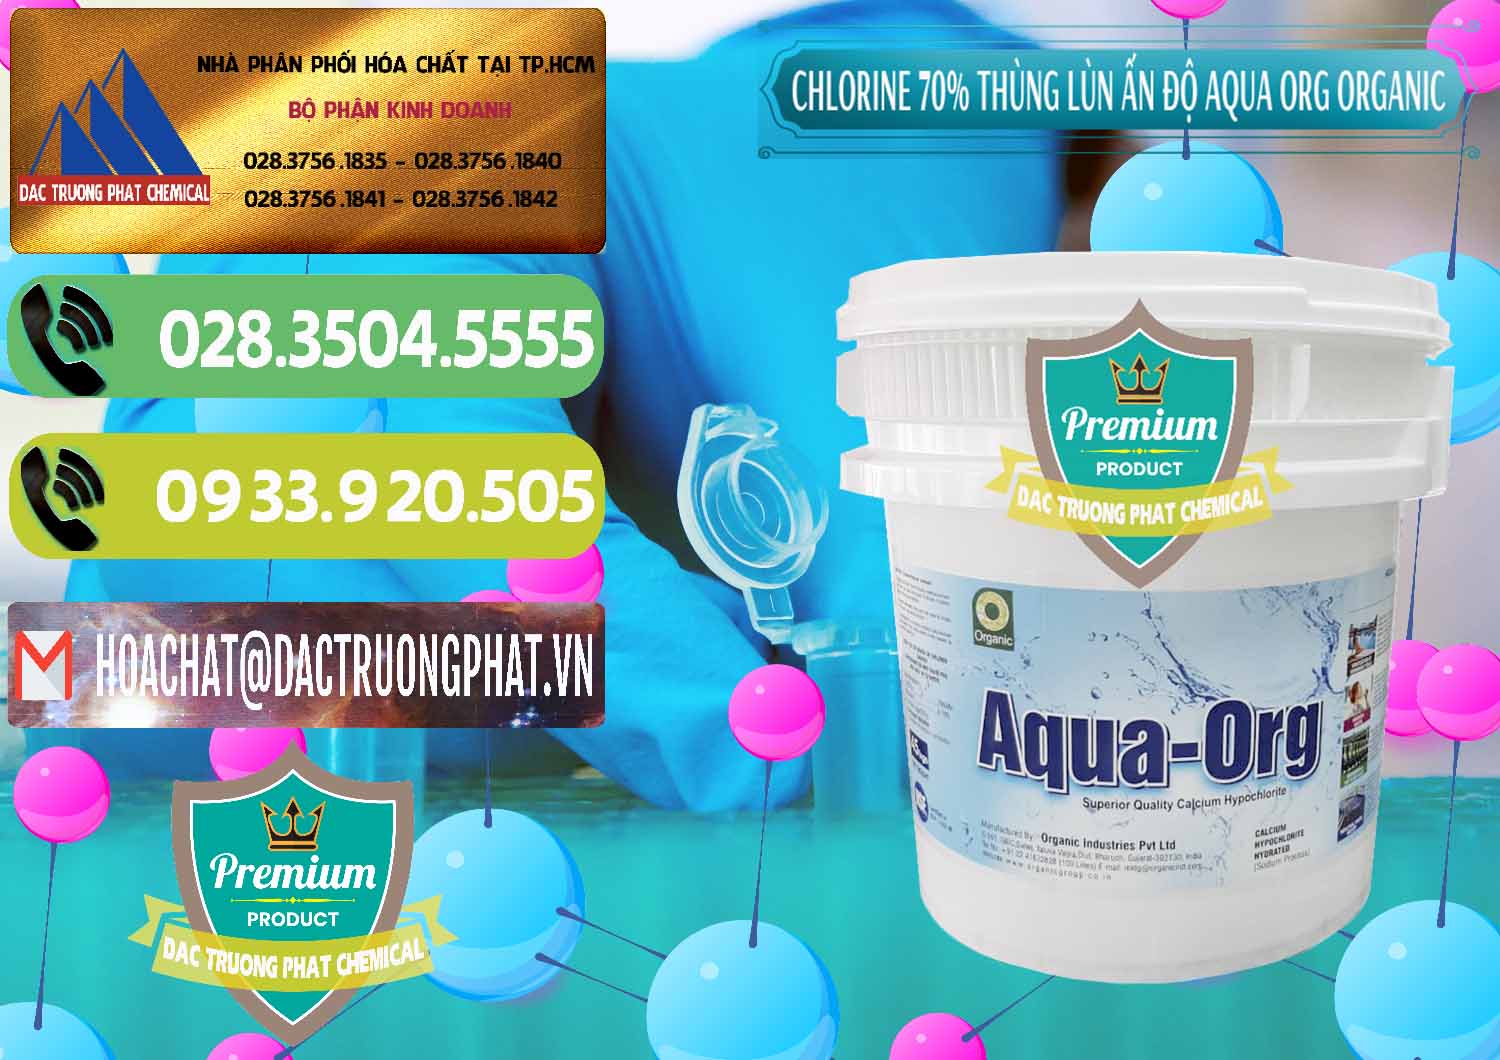 Cty kinh doanh & bán Chlorine – Clorin 70% Thùng Lùn Ấn Độ Aqua ORG Organic India - 0212 - Bán và phân phối hóa chất tại TP.HCM - hoachatmientay.vn